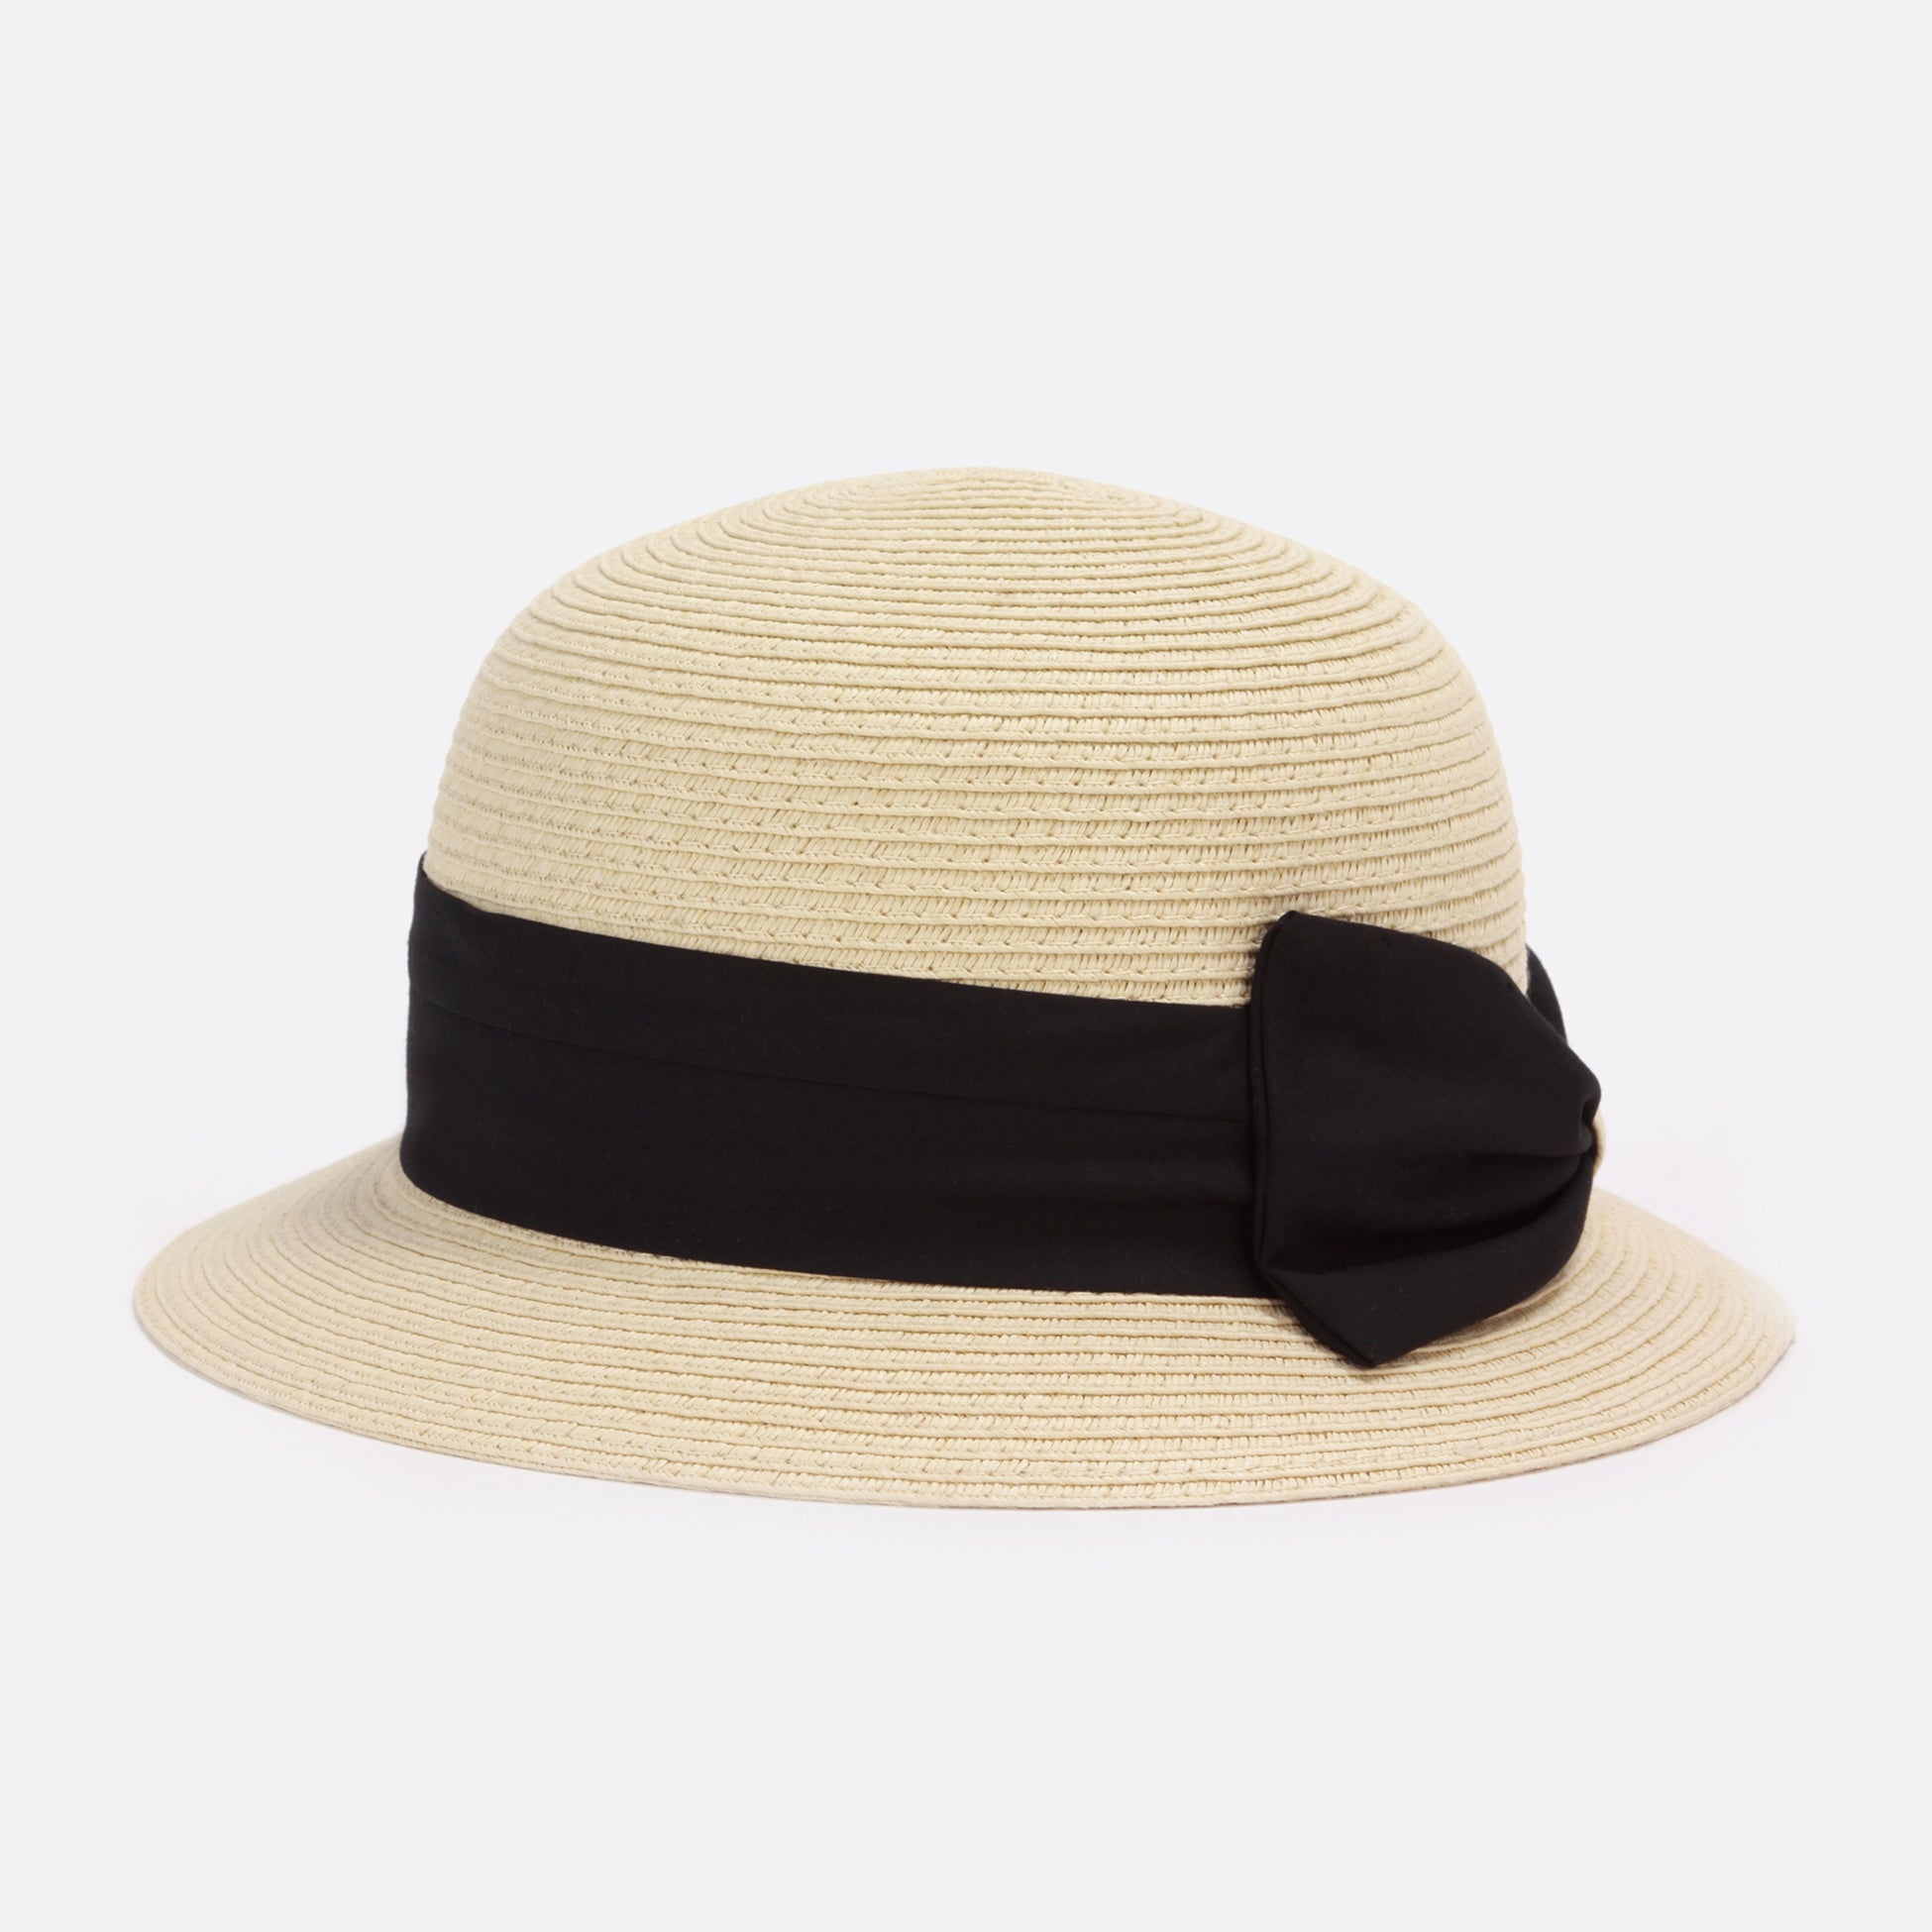 Chapeau cloche beige en paille ajustable avec ruban de tissu noir